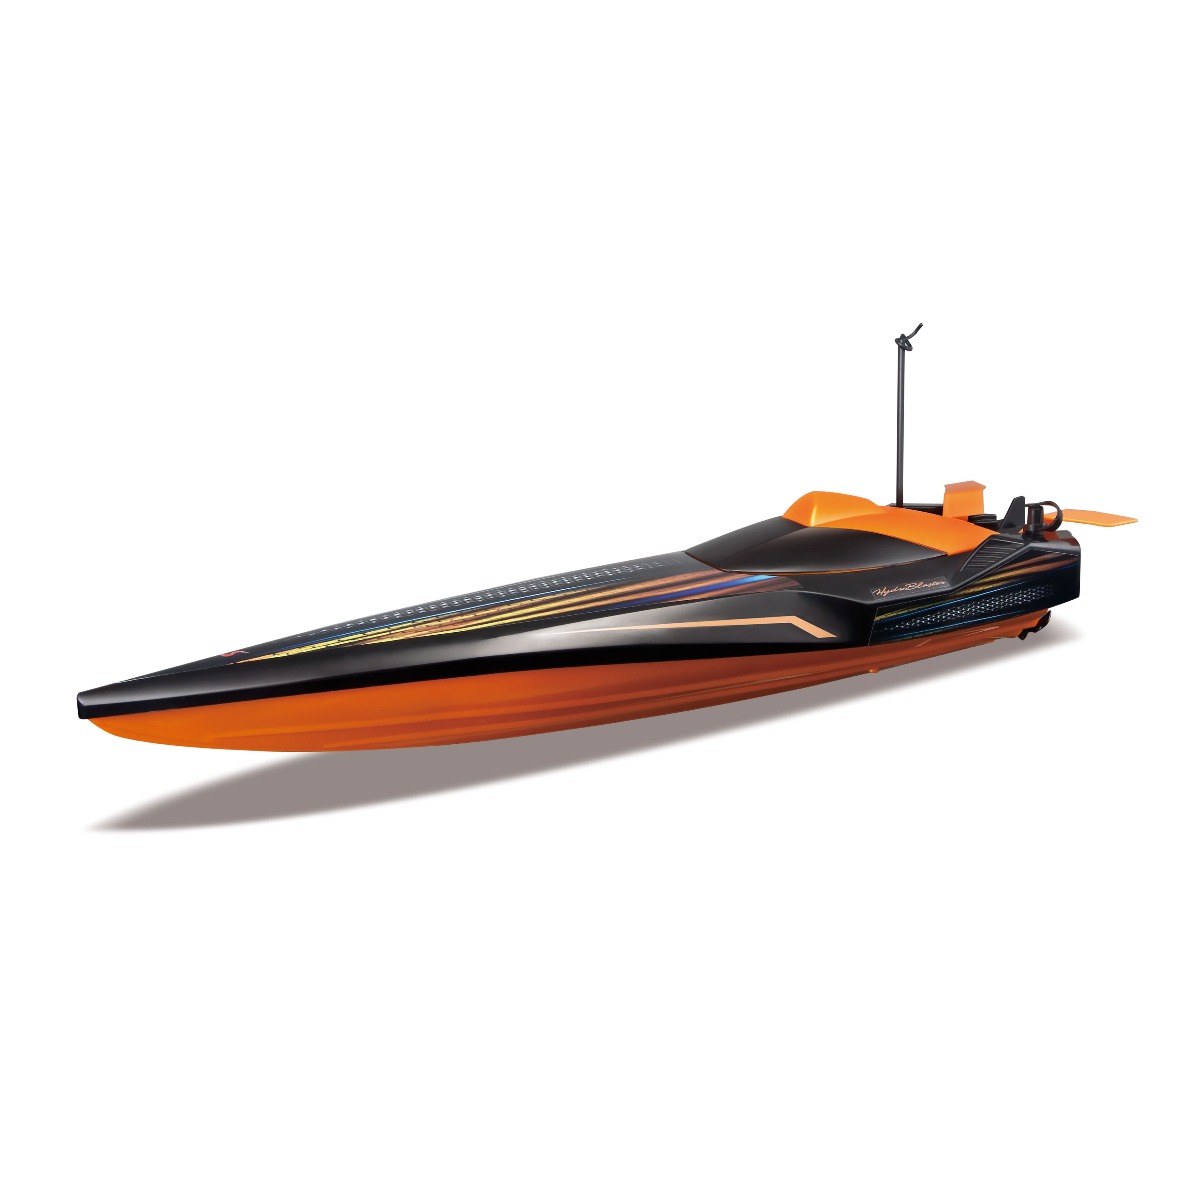 Barca cu telecomanda Maisto Tech Hydroblaster Speed, Negru/Portocaliu